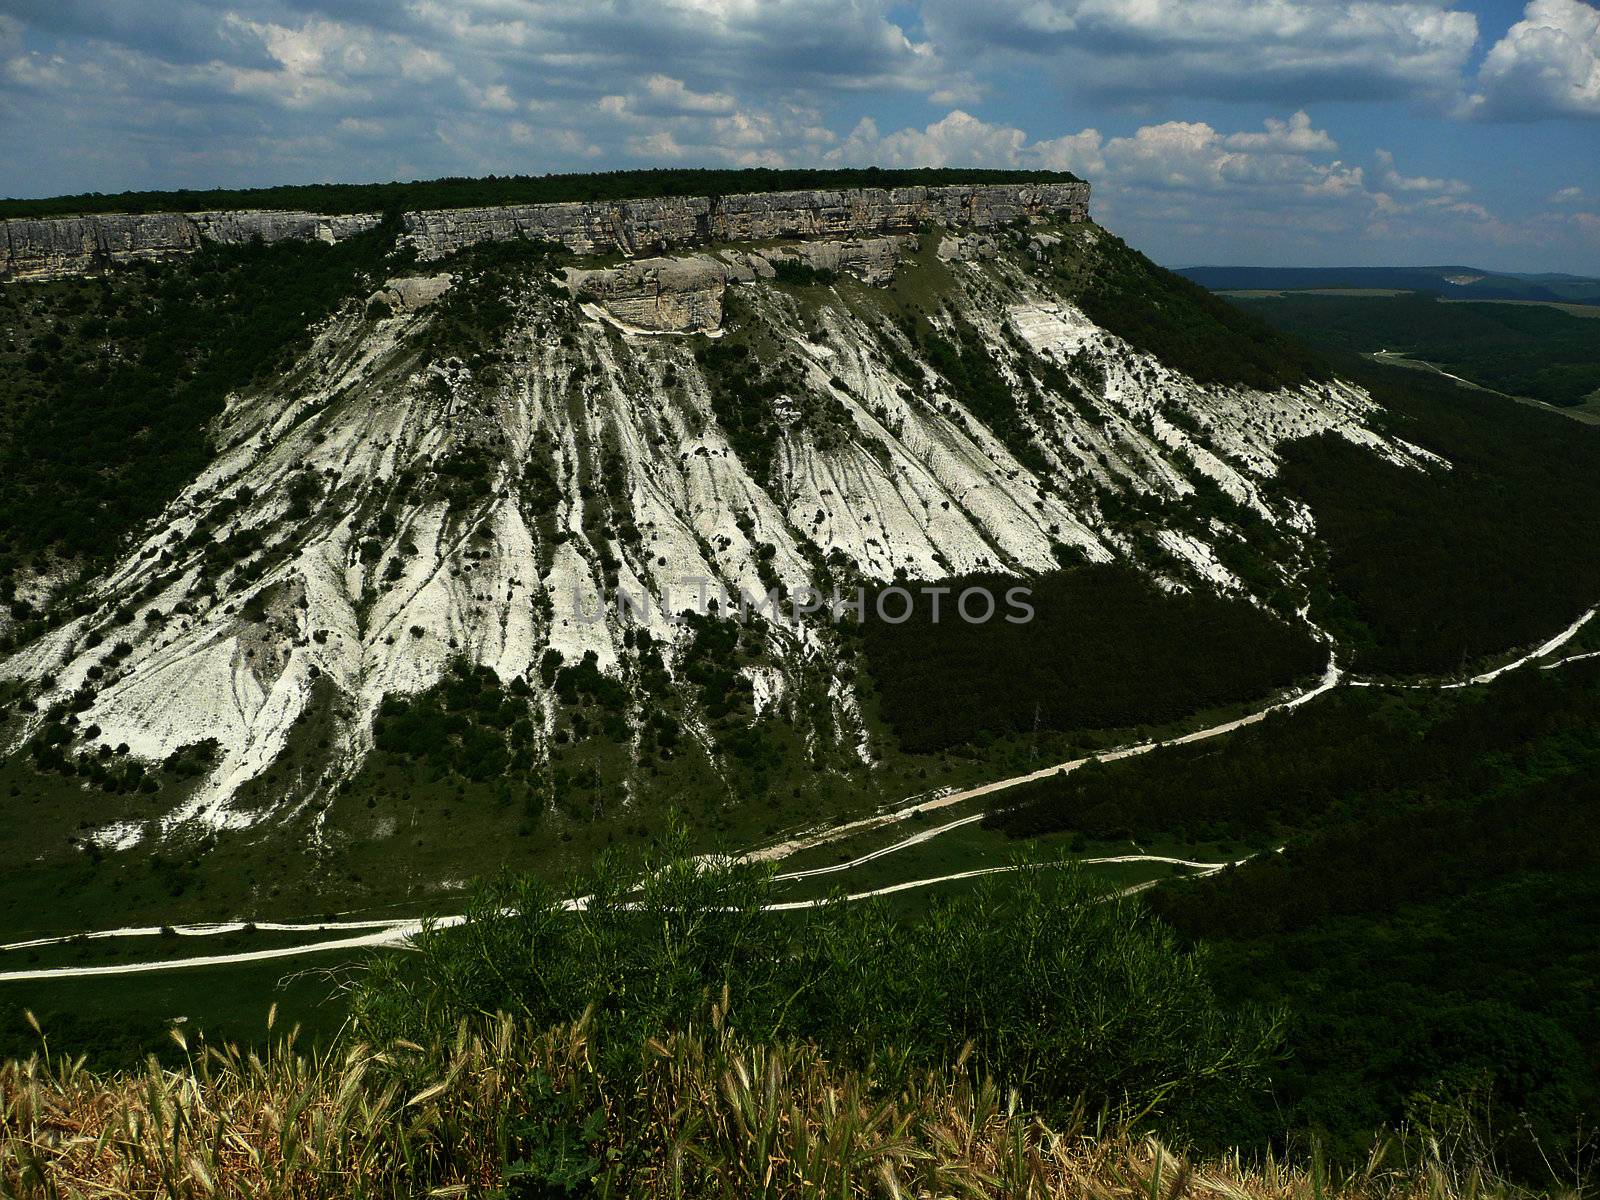 Panorama of the caves, Chufut-Kale, Crimea, Ukraine